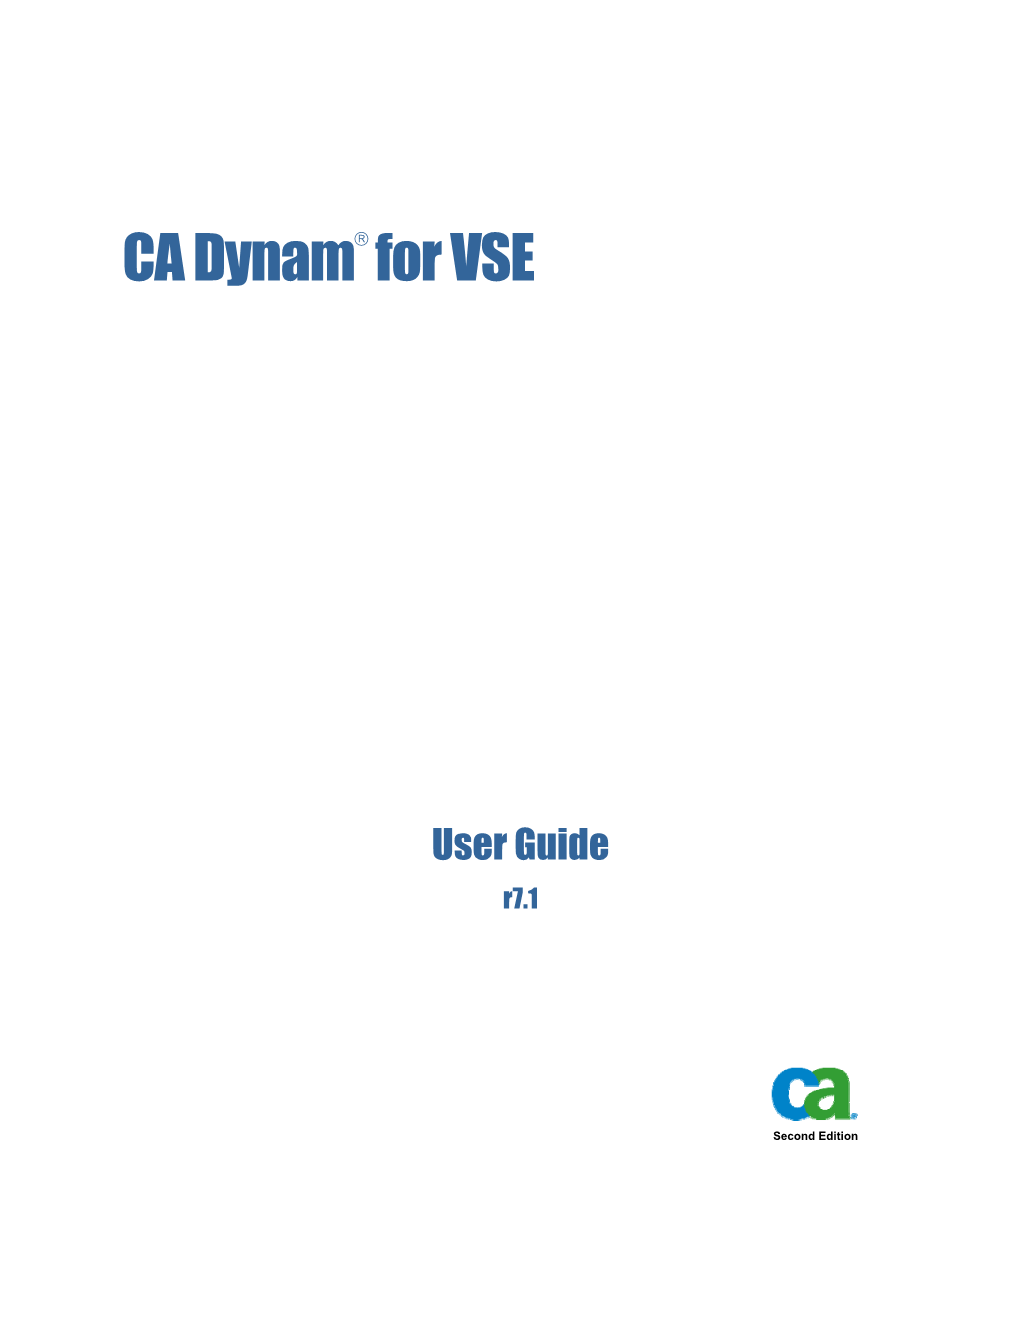 CA Dynam for VSE User Guide